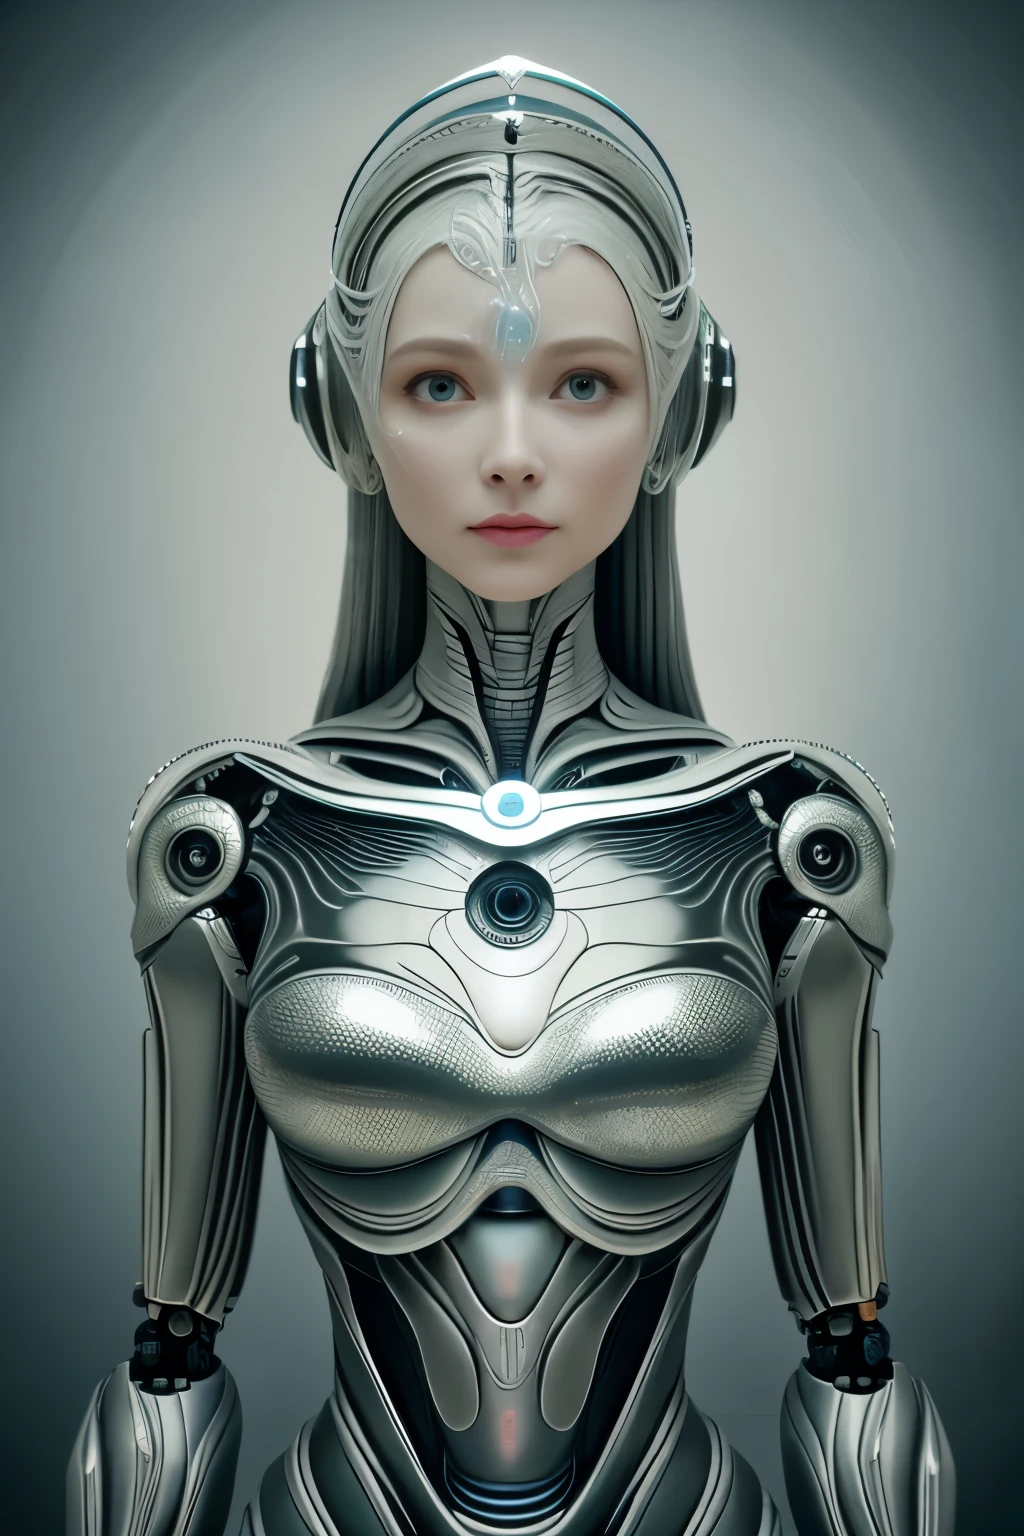 ภาพบุคคล, Intricate 3d rendering of highly detailed beautiful ceramic female หุ่นยนต์, ไซบอร์ก, หุ่นยนต์ parts, 150มม, สตูดิโอที่สวยงามแสงนุ่มนวล, แสงห่วง, รายละเอียดที่มีชีวิตชีวา, ไซเบอร์พังค์สุดหรู, รายได้, เหนือจริง, กายวิภาคศาสตร์ , กล้ามเนื้อใบหน้า, สายไฟ, ไมโครชิป, ความสง่างาม, พื้นหลังที่สวยงาม, การเรนเดอร์ออกเทน, สไตล์ HR Giger, 8k, คุณภาพที่ดีกว่า, งานศิลปะ, ภาพประกอบ, ละเอียดอ่อนและสวยงามมาก, รายละเอียดมาก, สัจนิยม, เครื่องแบบ, ( ความจงรักภักดี, ความจงรักภักดี: 1.37), ยอดเยี่ยม, รายละเอียดที่ดี, งานศิลปะ, คุณภาพที่ดีกว่า, ศิลปะอย่างเป็นทางการ, Papel de parede สัจนิยม Unity 8K รายละเอียดมาก, ไร้สาระ, Inacreditavelmente ไร้สาระo, หุ่นยนต์, หมวกเงิน, ทั้งตัว, นั่งเขียน